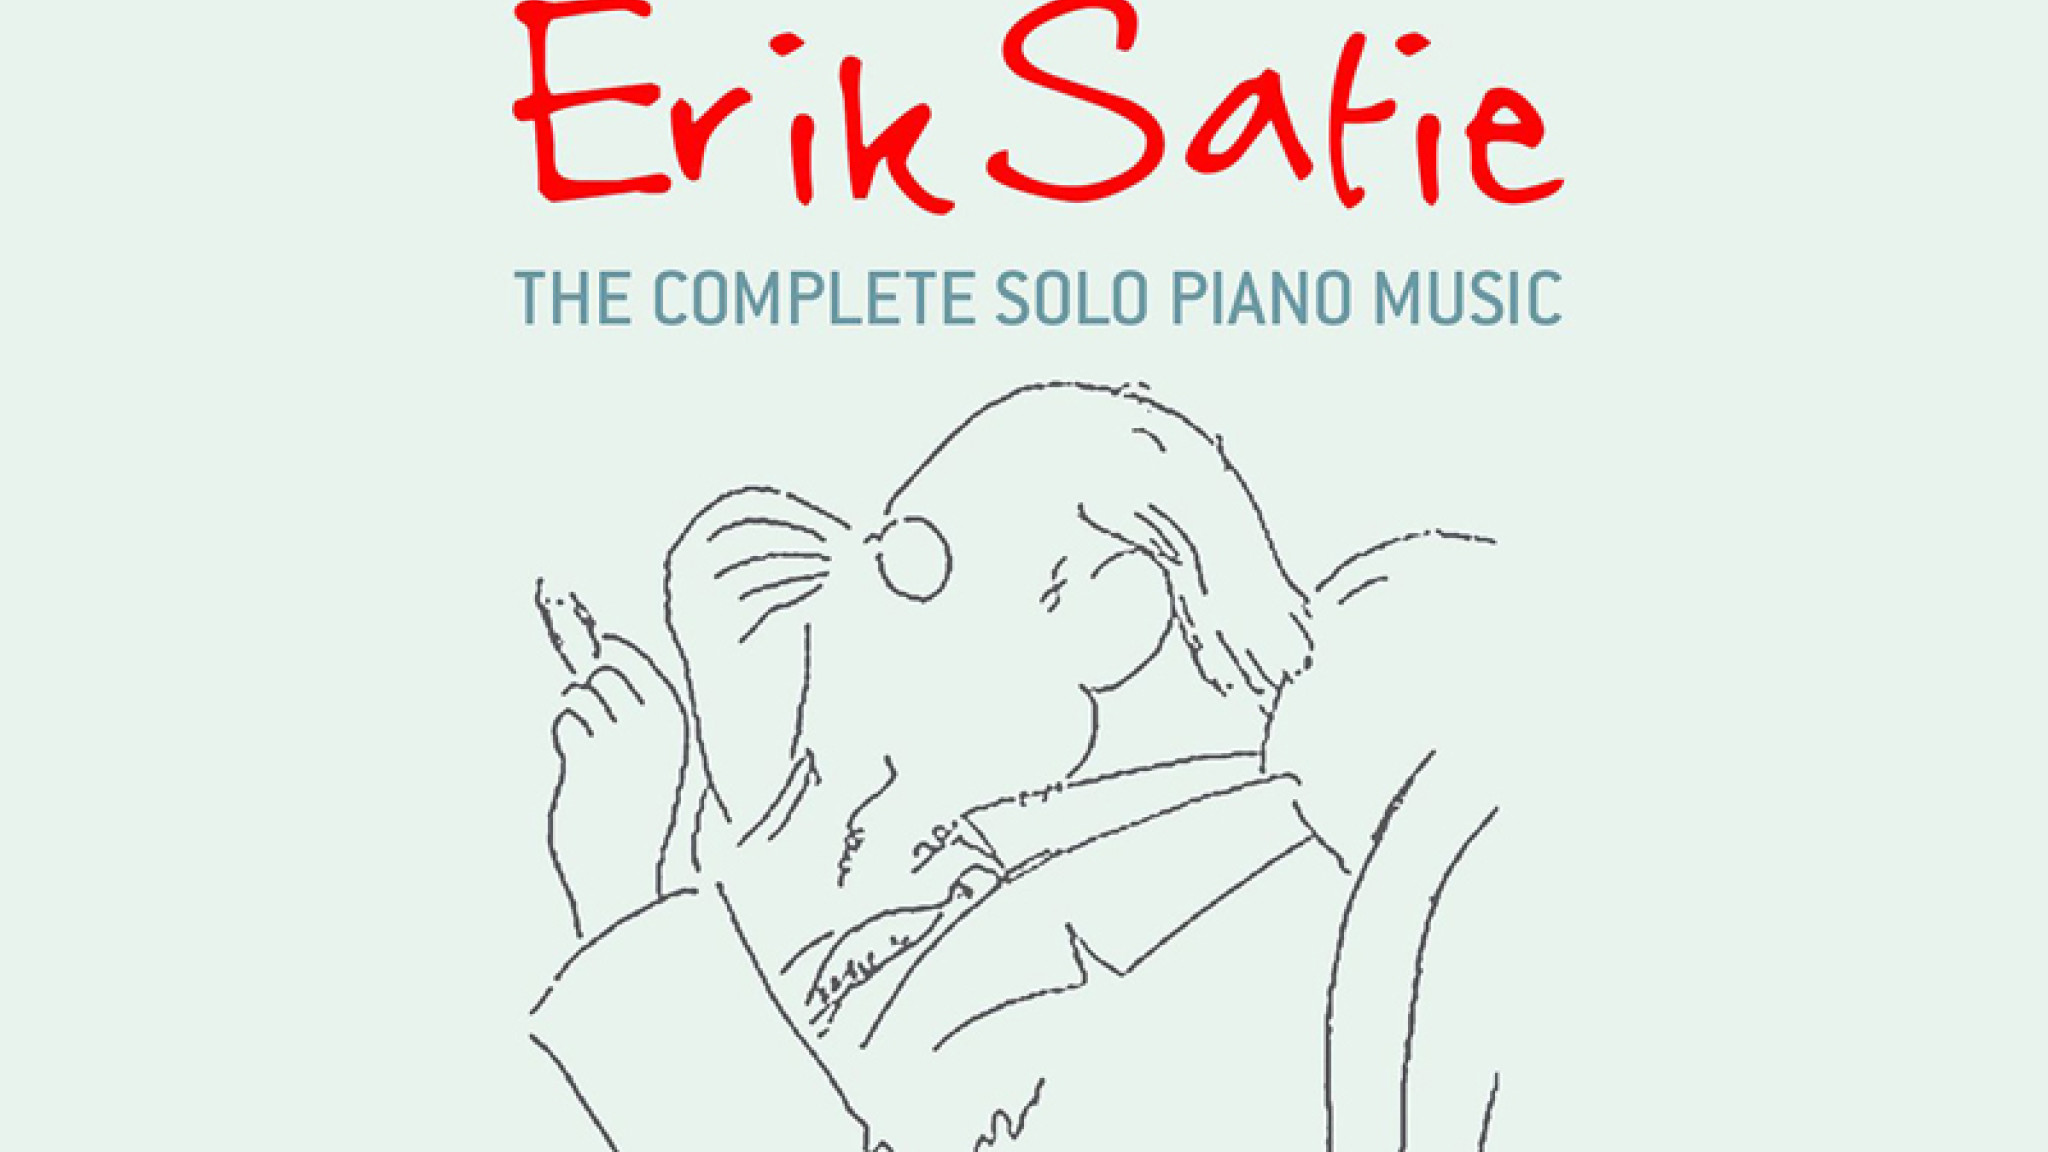 Geheimnisvolle Töne – Zum 150. Geburtstag von Erik Satie